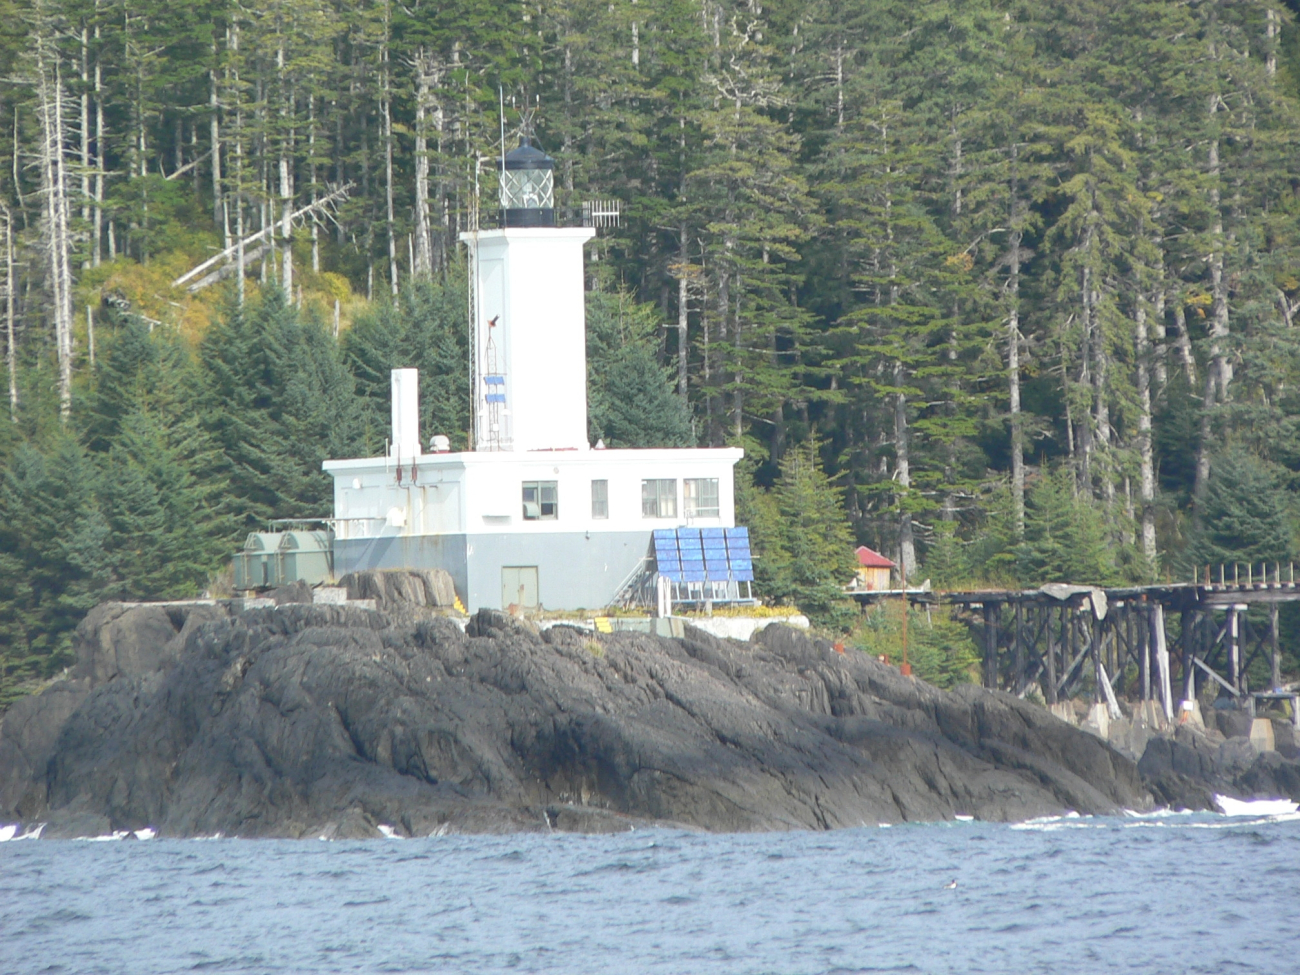 Cape Decision Lighthouse